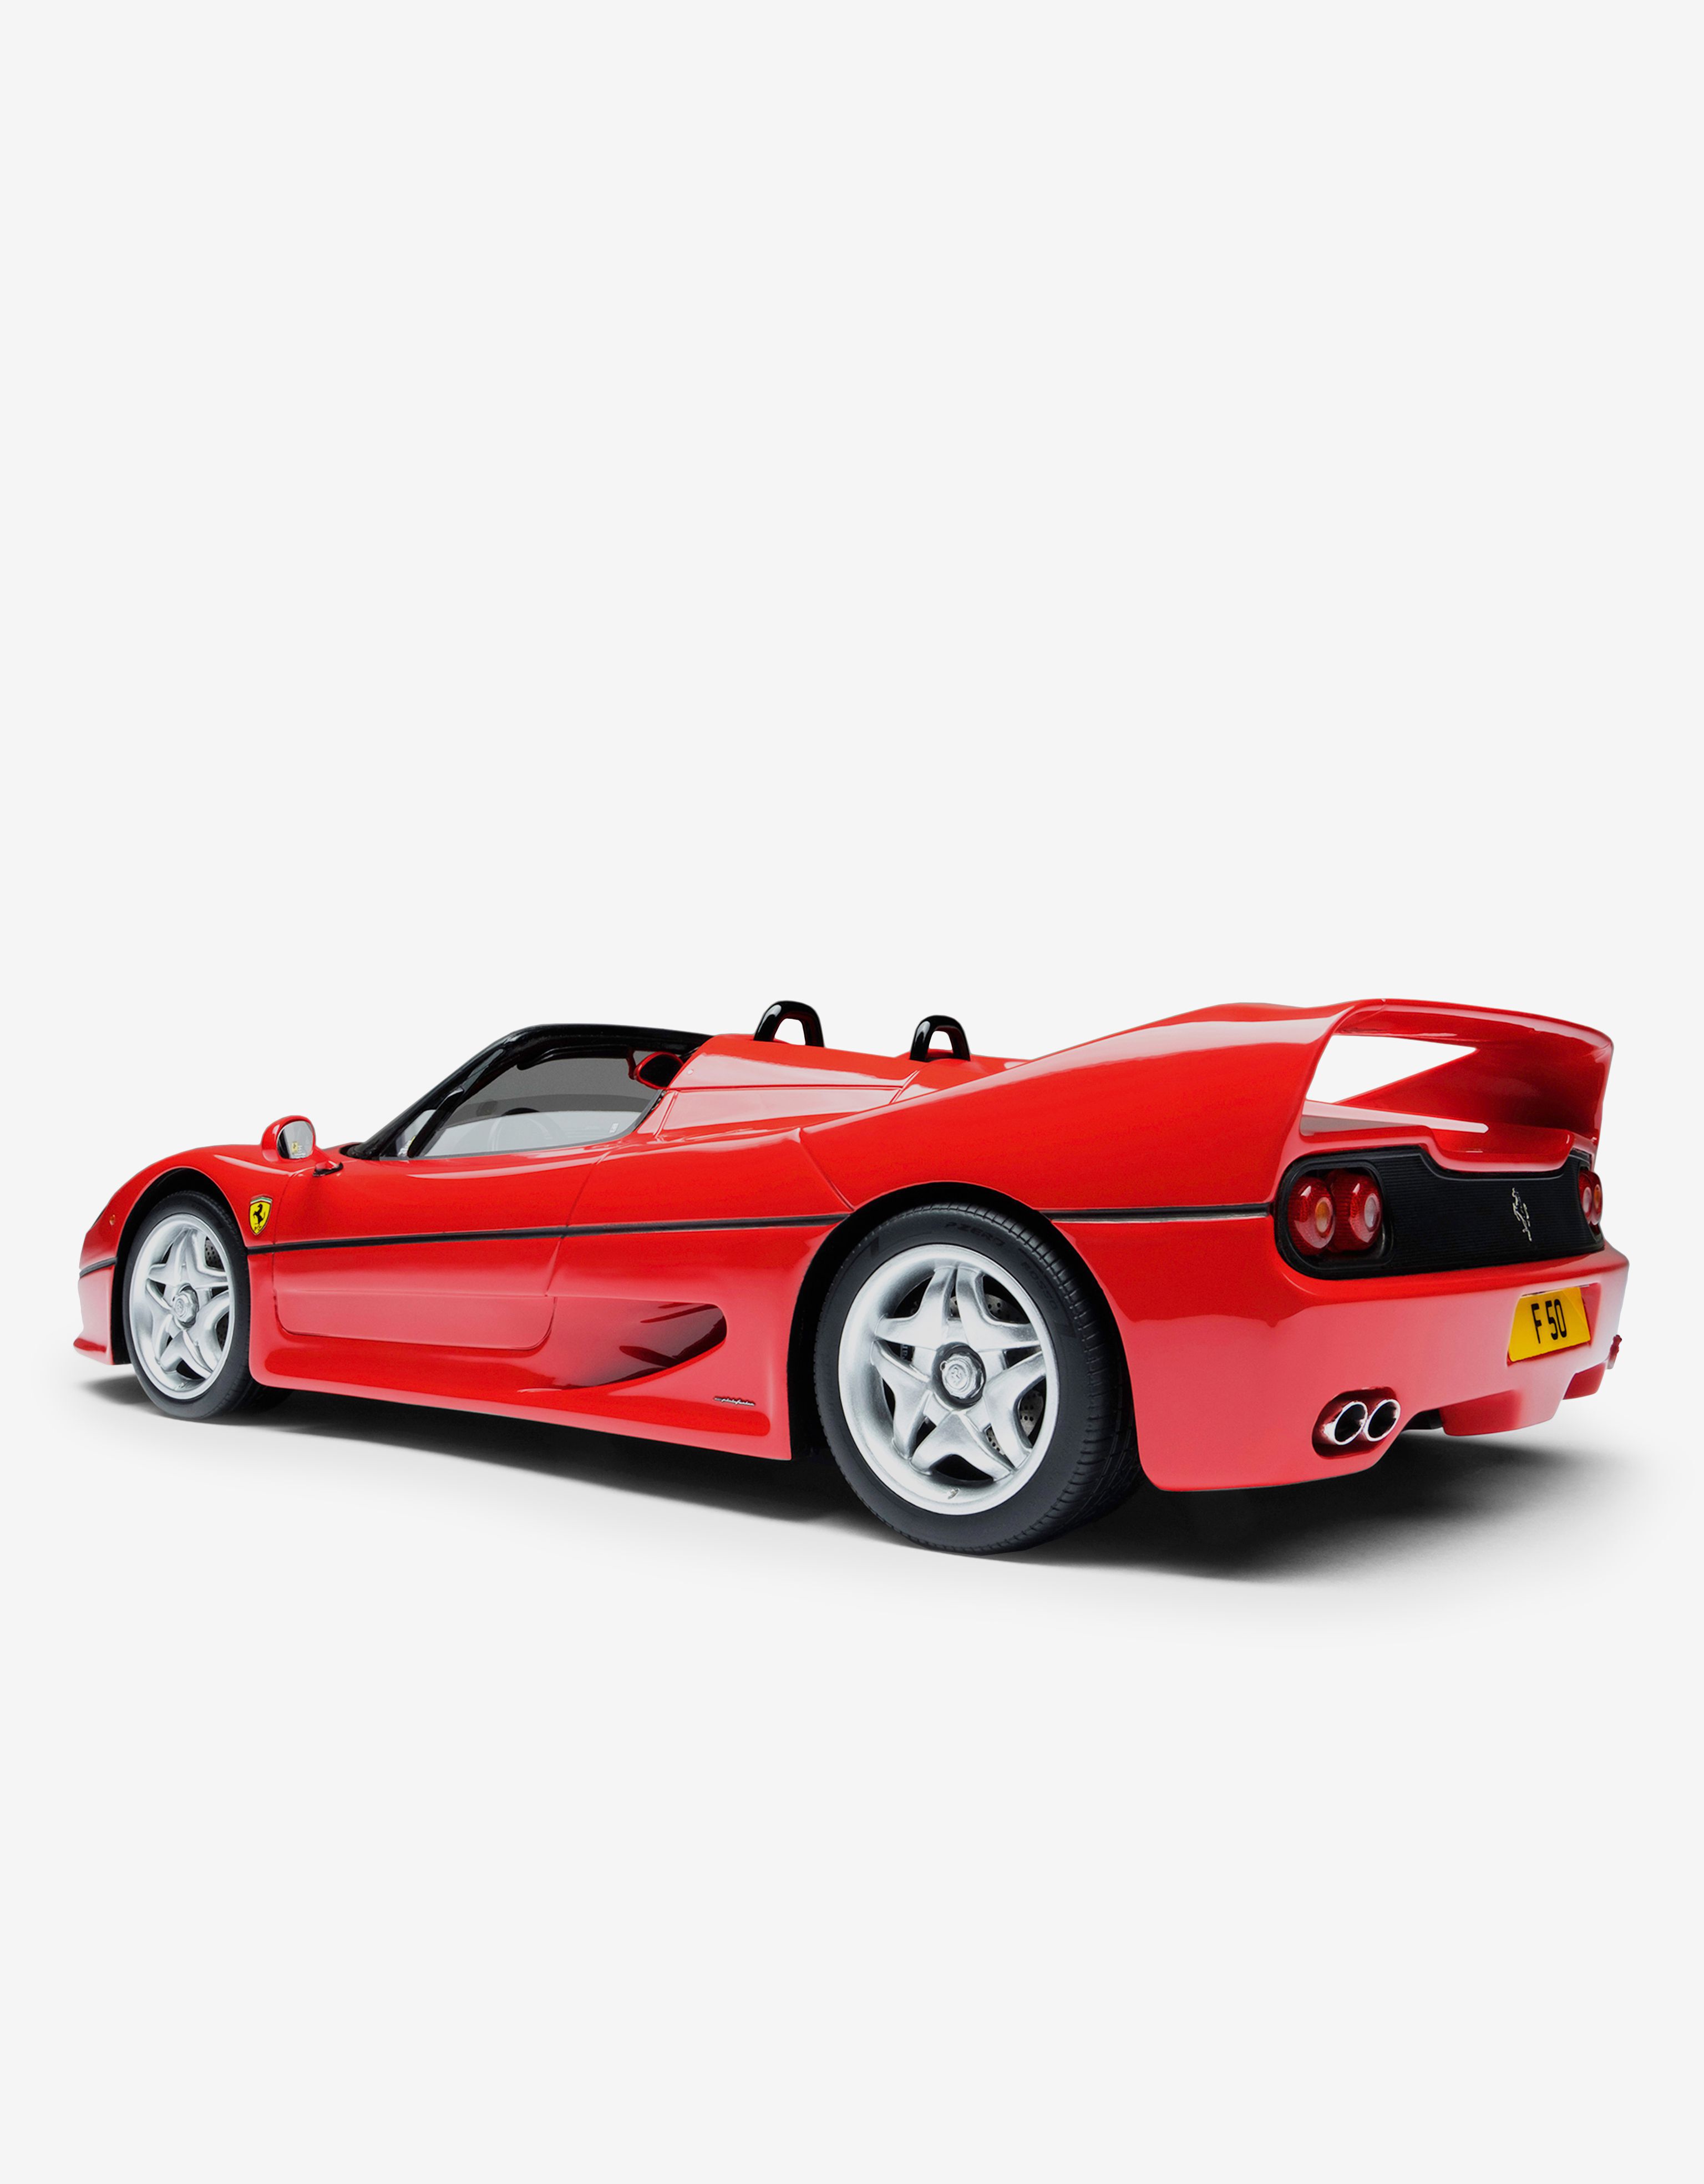 Ferrari 法拉利 F50 1:18 模型车 红色 L7582f